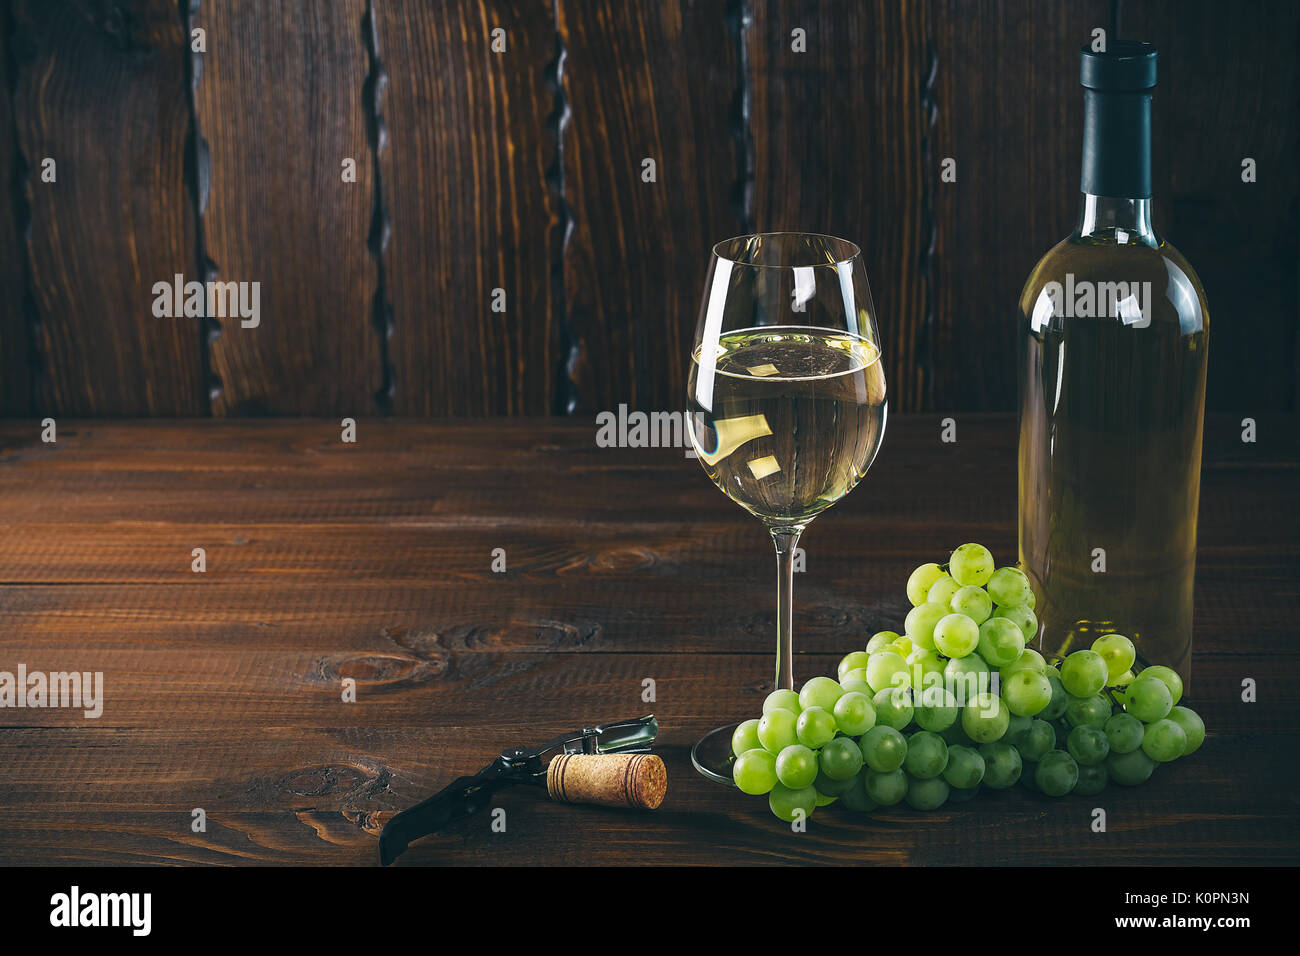 Splendido vino bianco in vetro del vino con un grappolo di uva verde, su uno sfondo di legno con spazio libero Foto Stock